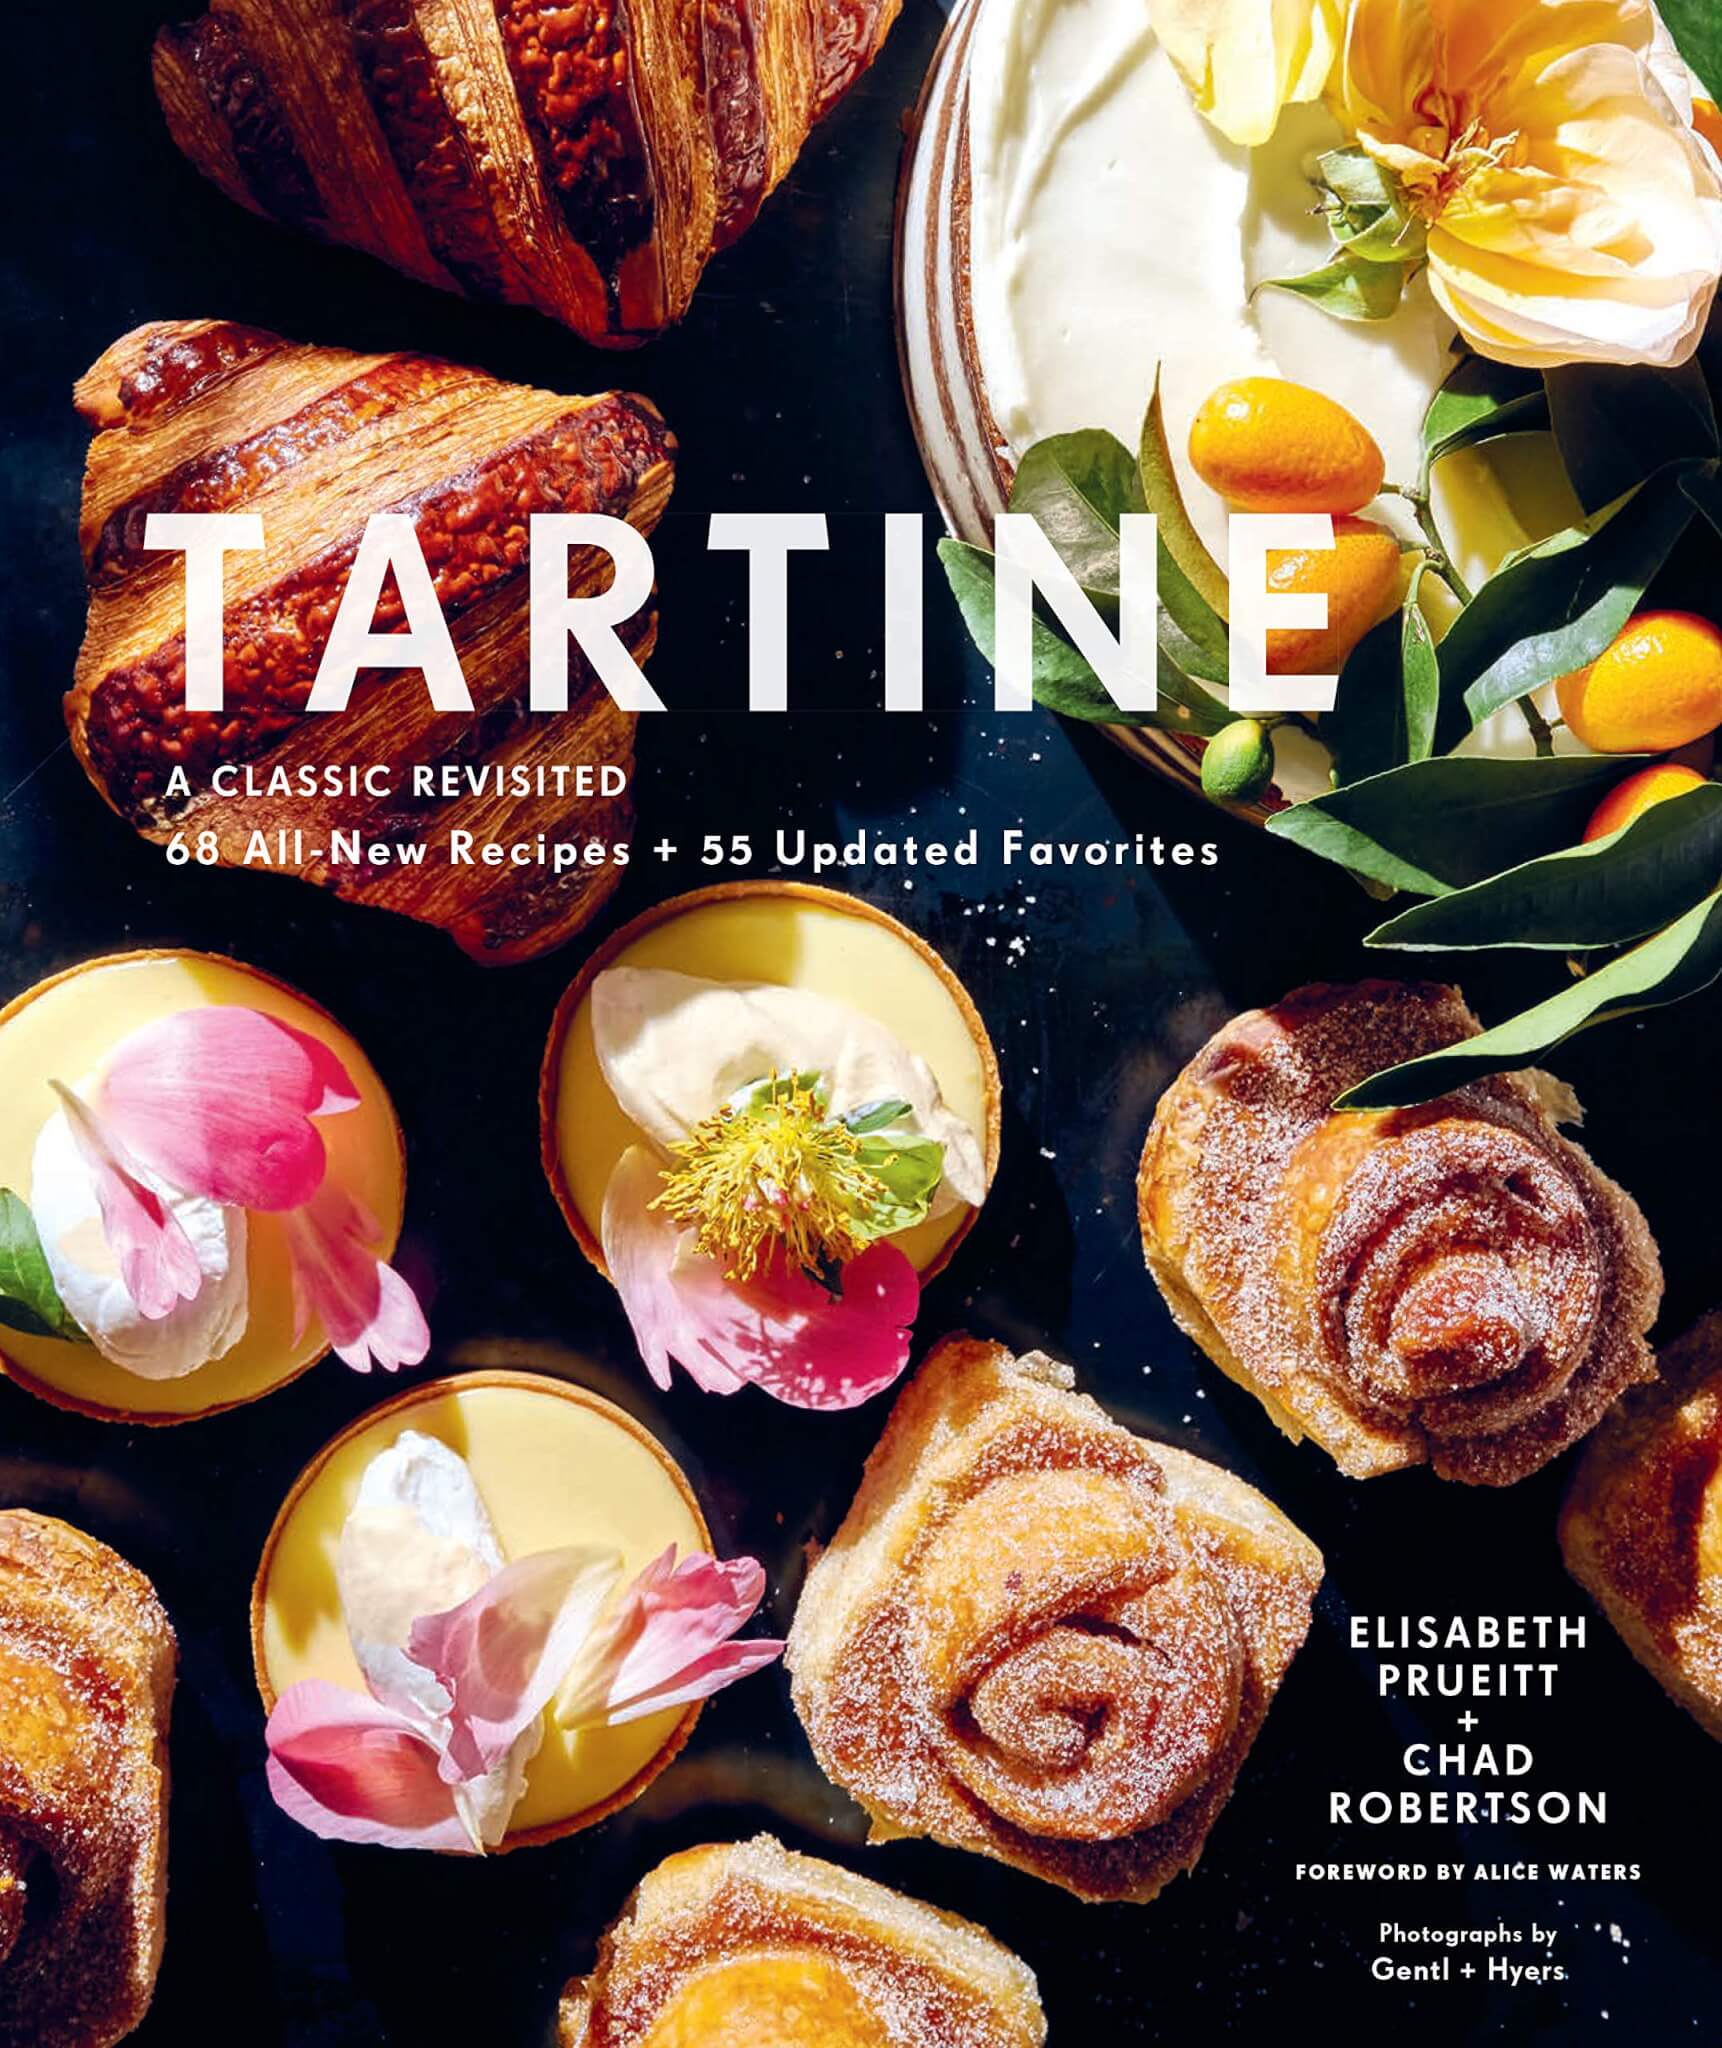 "Tartine" by Elisabeth Prueitt and Chad Robertson